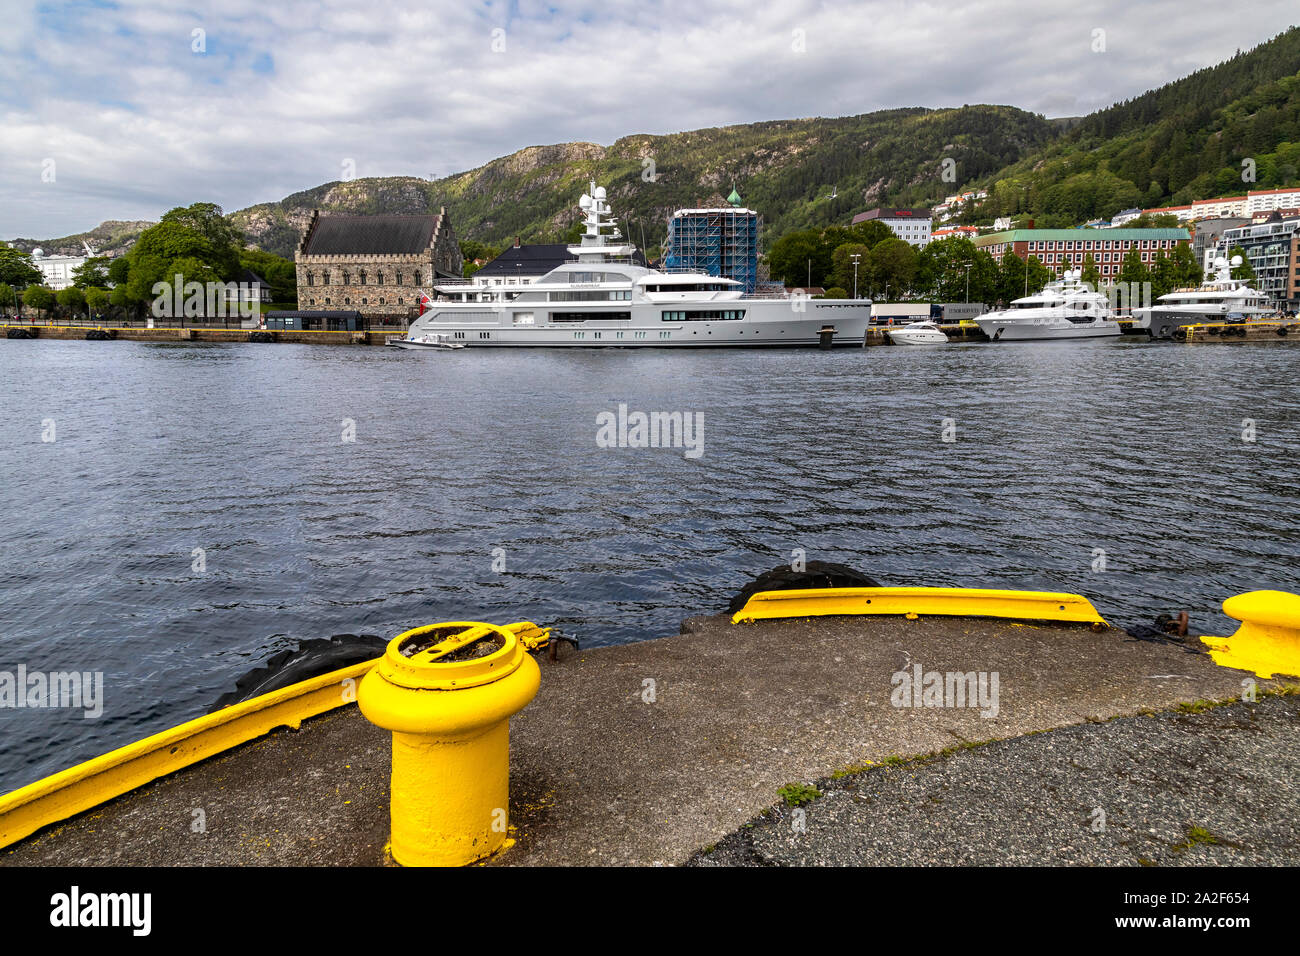 La porta interna di Bergen, Norvegia. I super yacht Cloudbreak ormeggiati davanti al molto vecchio Haakons Hall fortezza. Piccole barche Reef Chief e Astr Foto Stock